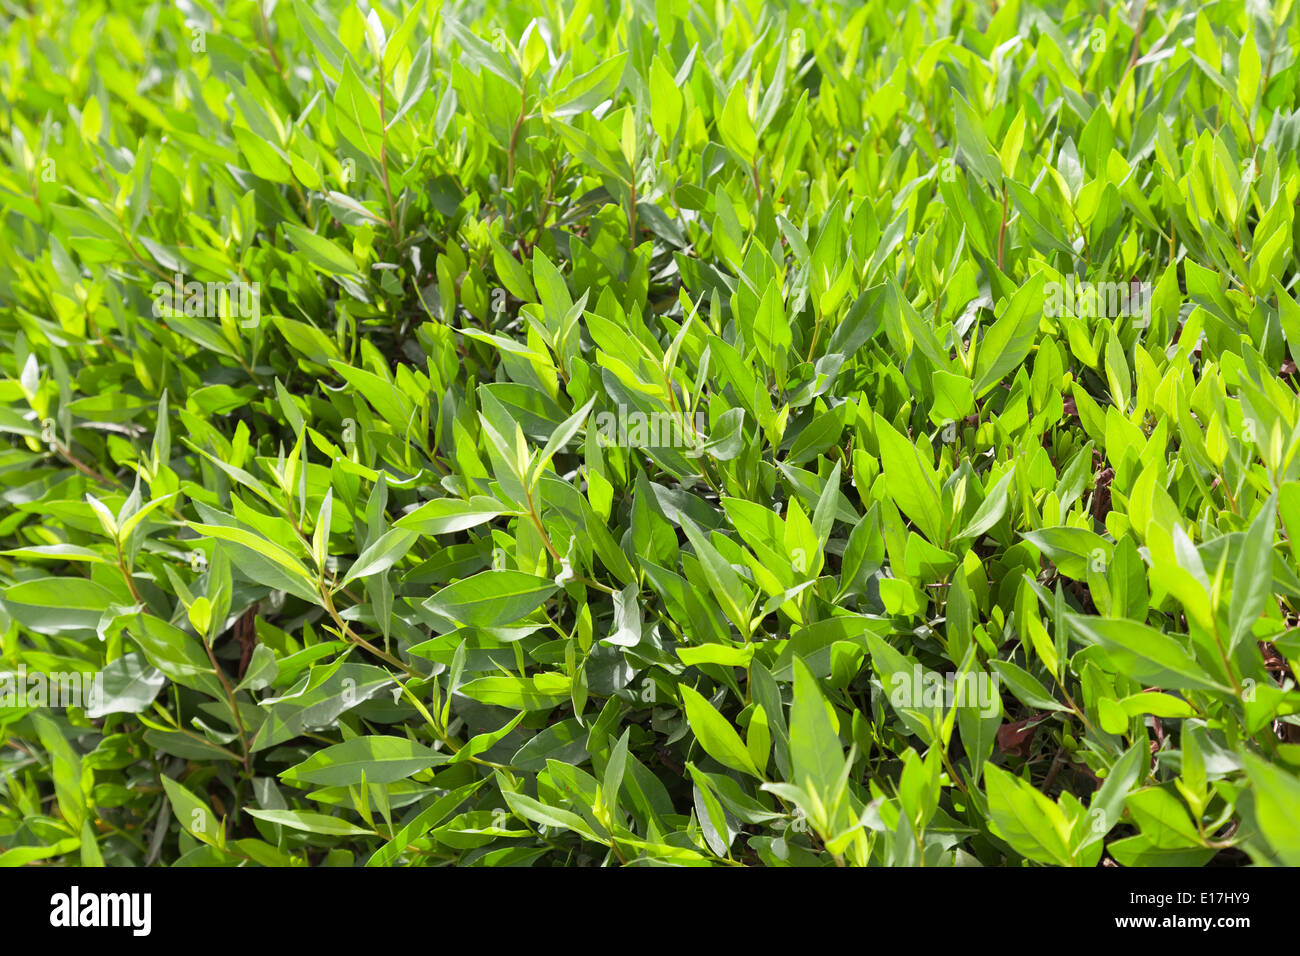 Leuchtend frische grüne Blätter Hintergrundtextur Foto Stockfoto